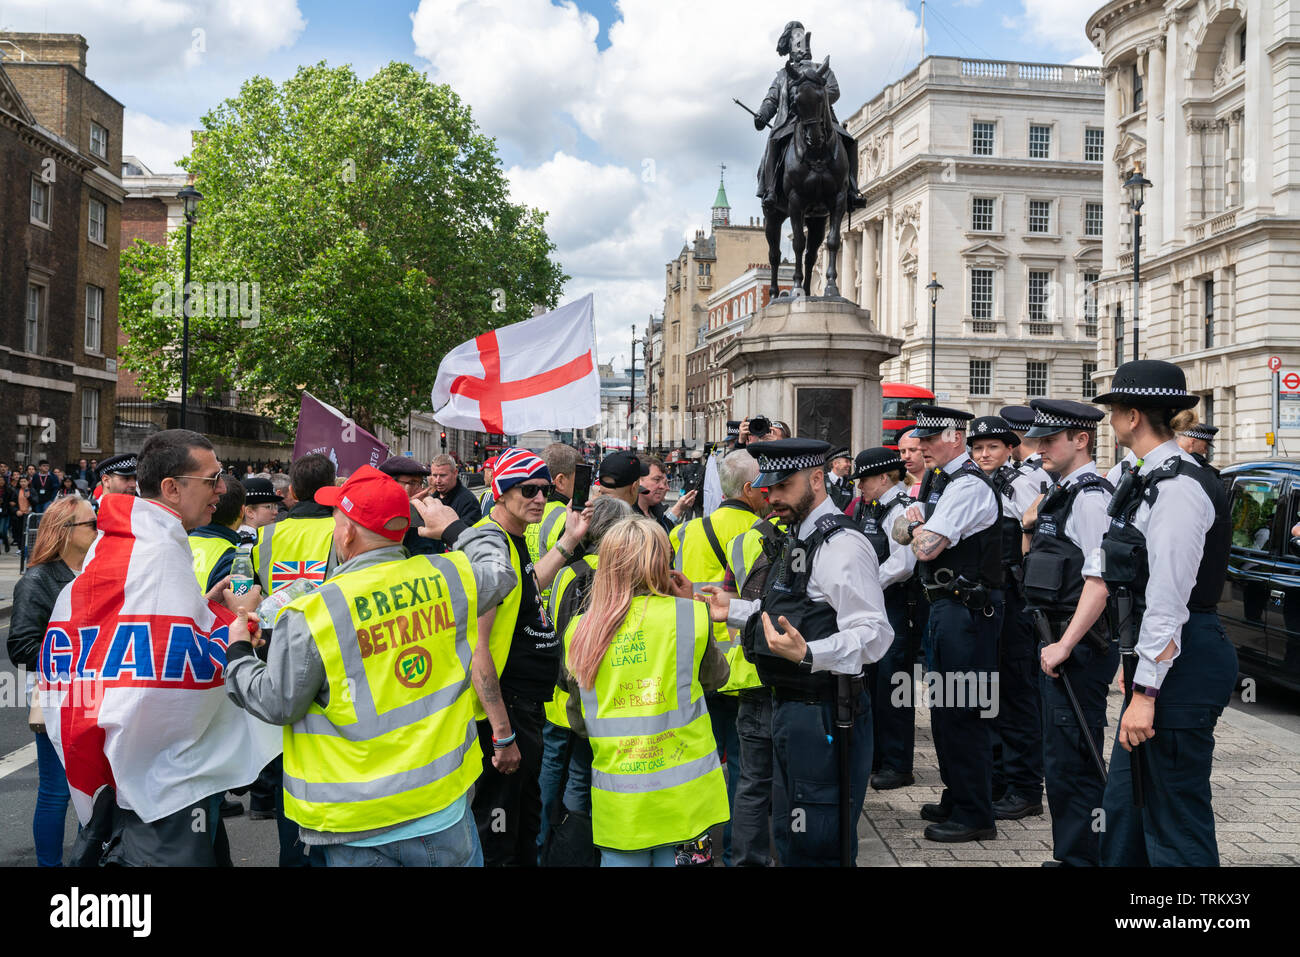 08 giu 2019 - Londra, Regno Unito. Un gruppo di arrabbiati manifestanti nazionalista rally una protesta al di fuori di Whitehall. Foto Stock